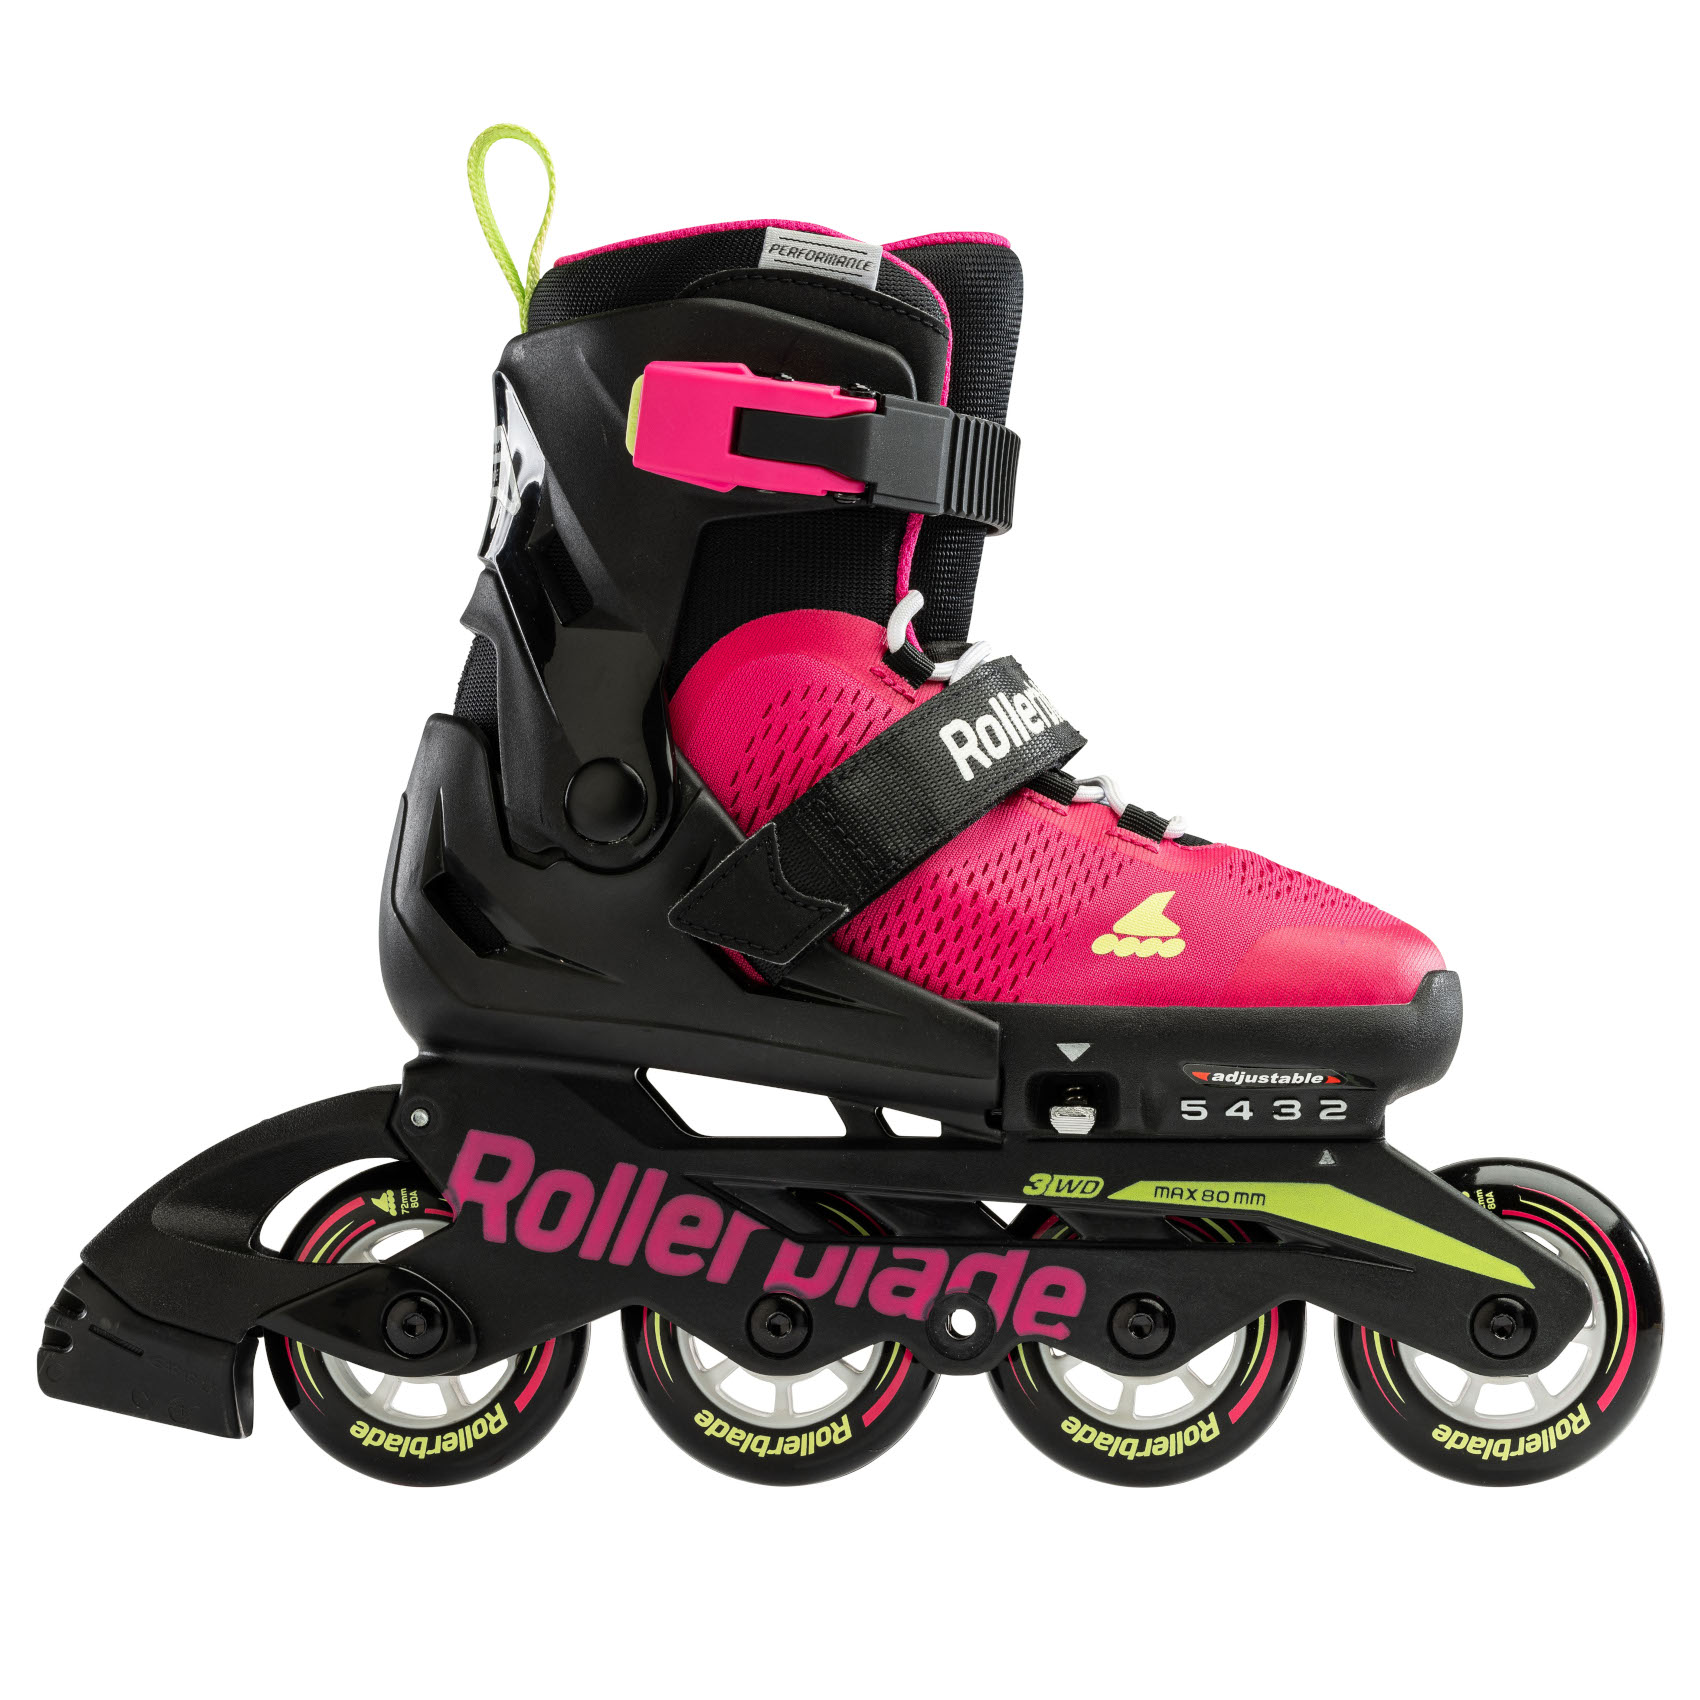 Produktbild von Rollerblade Microblade - Kinder Inlineskates - pink/light green